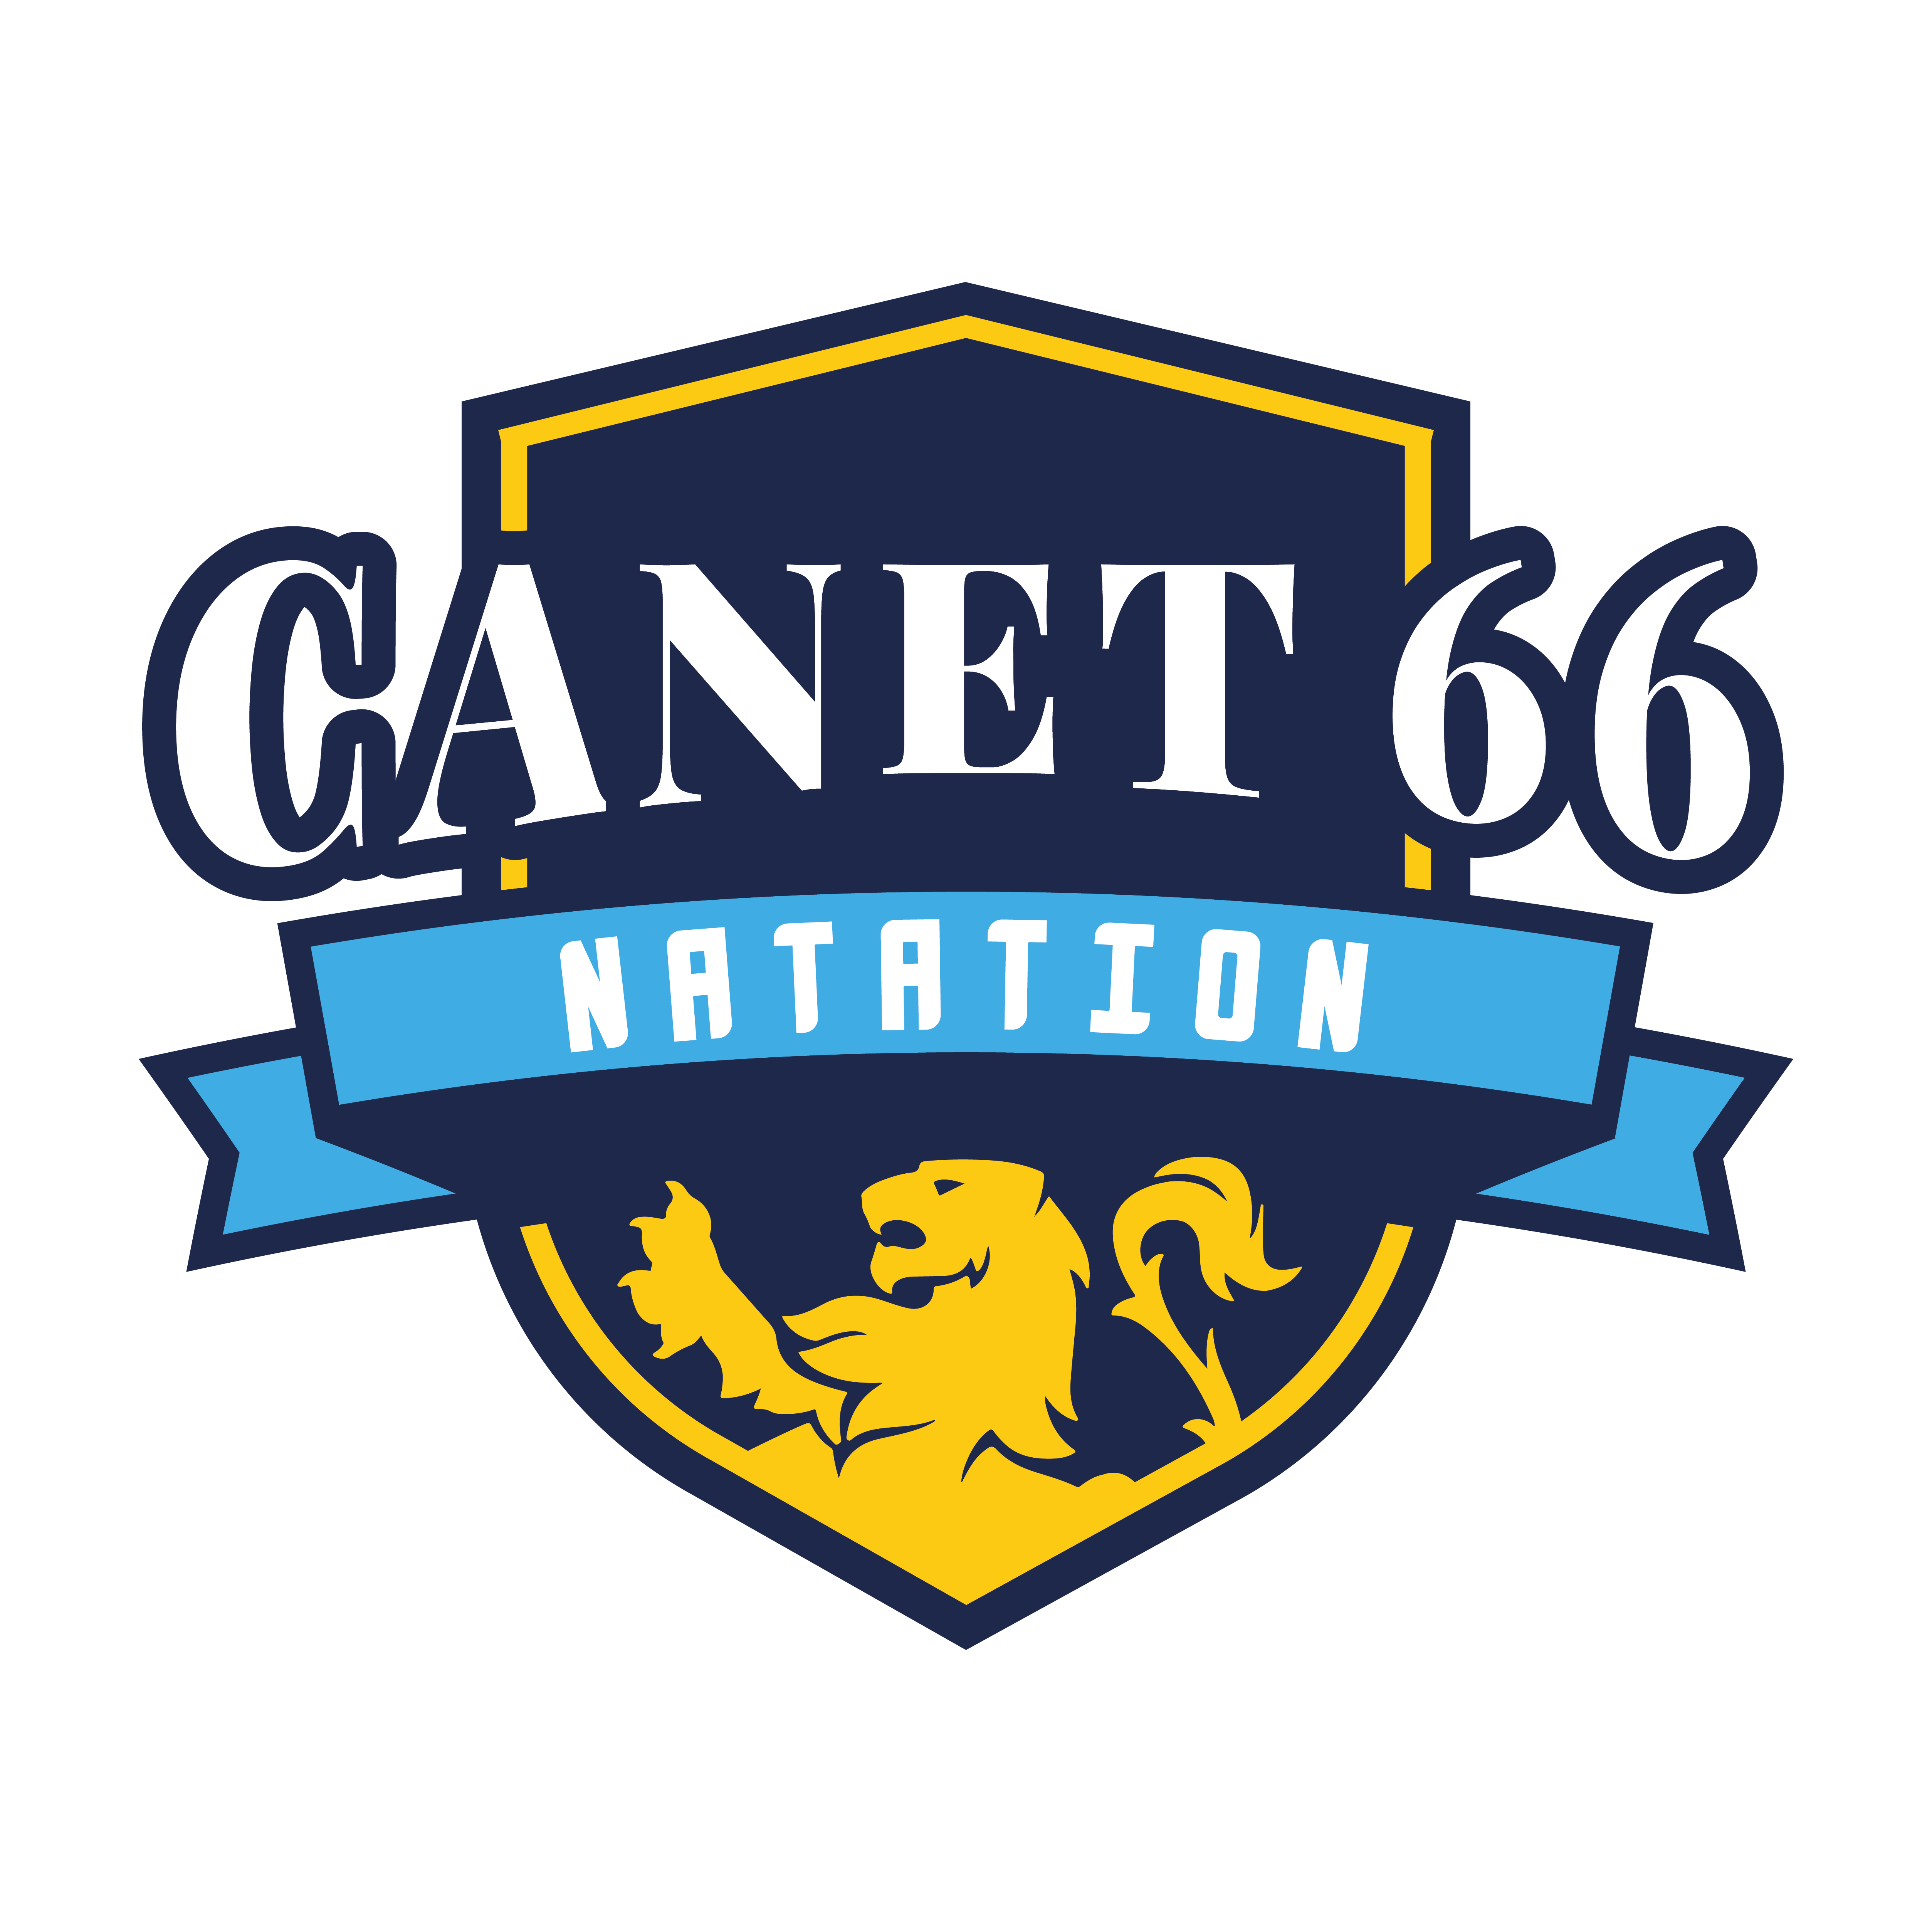 Canet 66 Natation - Collectif Sénior